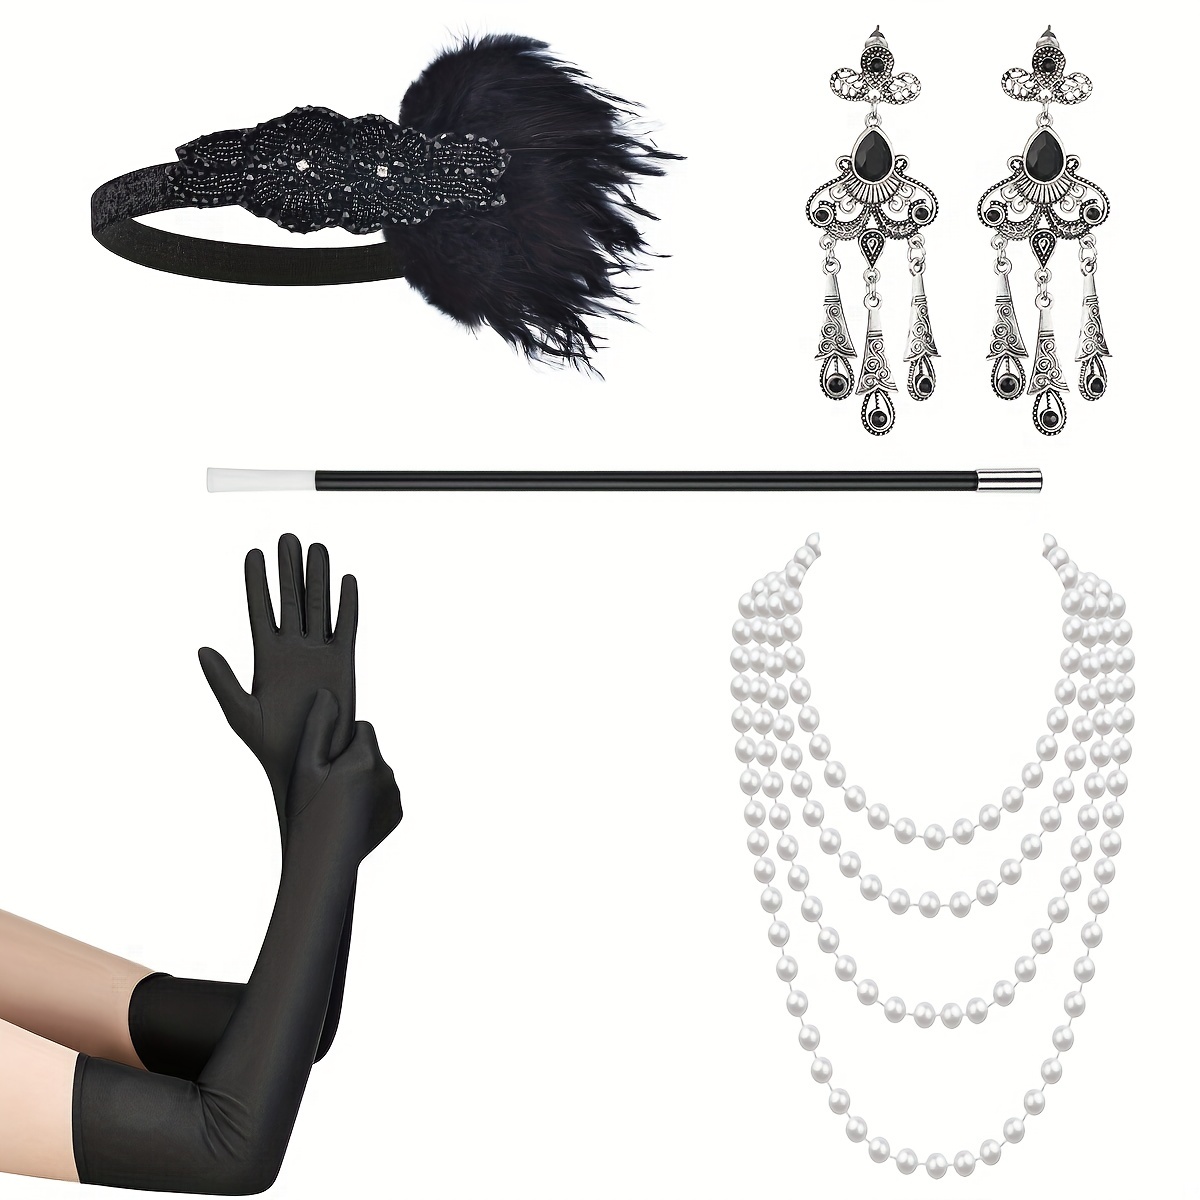 5 pièces - 1920 Great Gatsby Ensemble d'accessoires pour femmes - Costume  Gatsby 